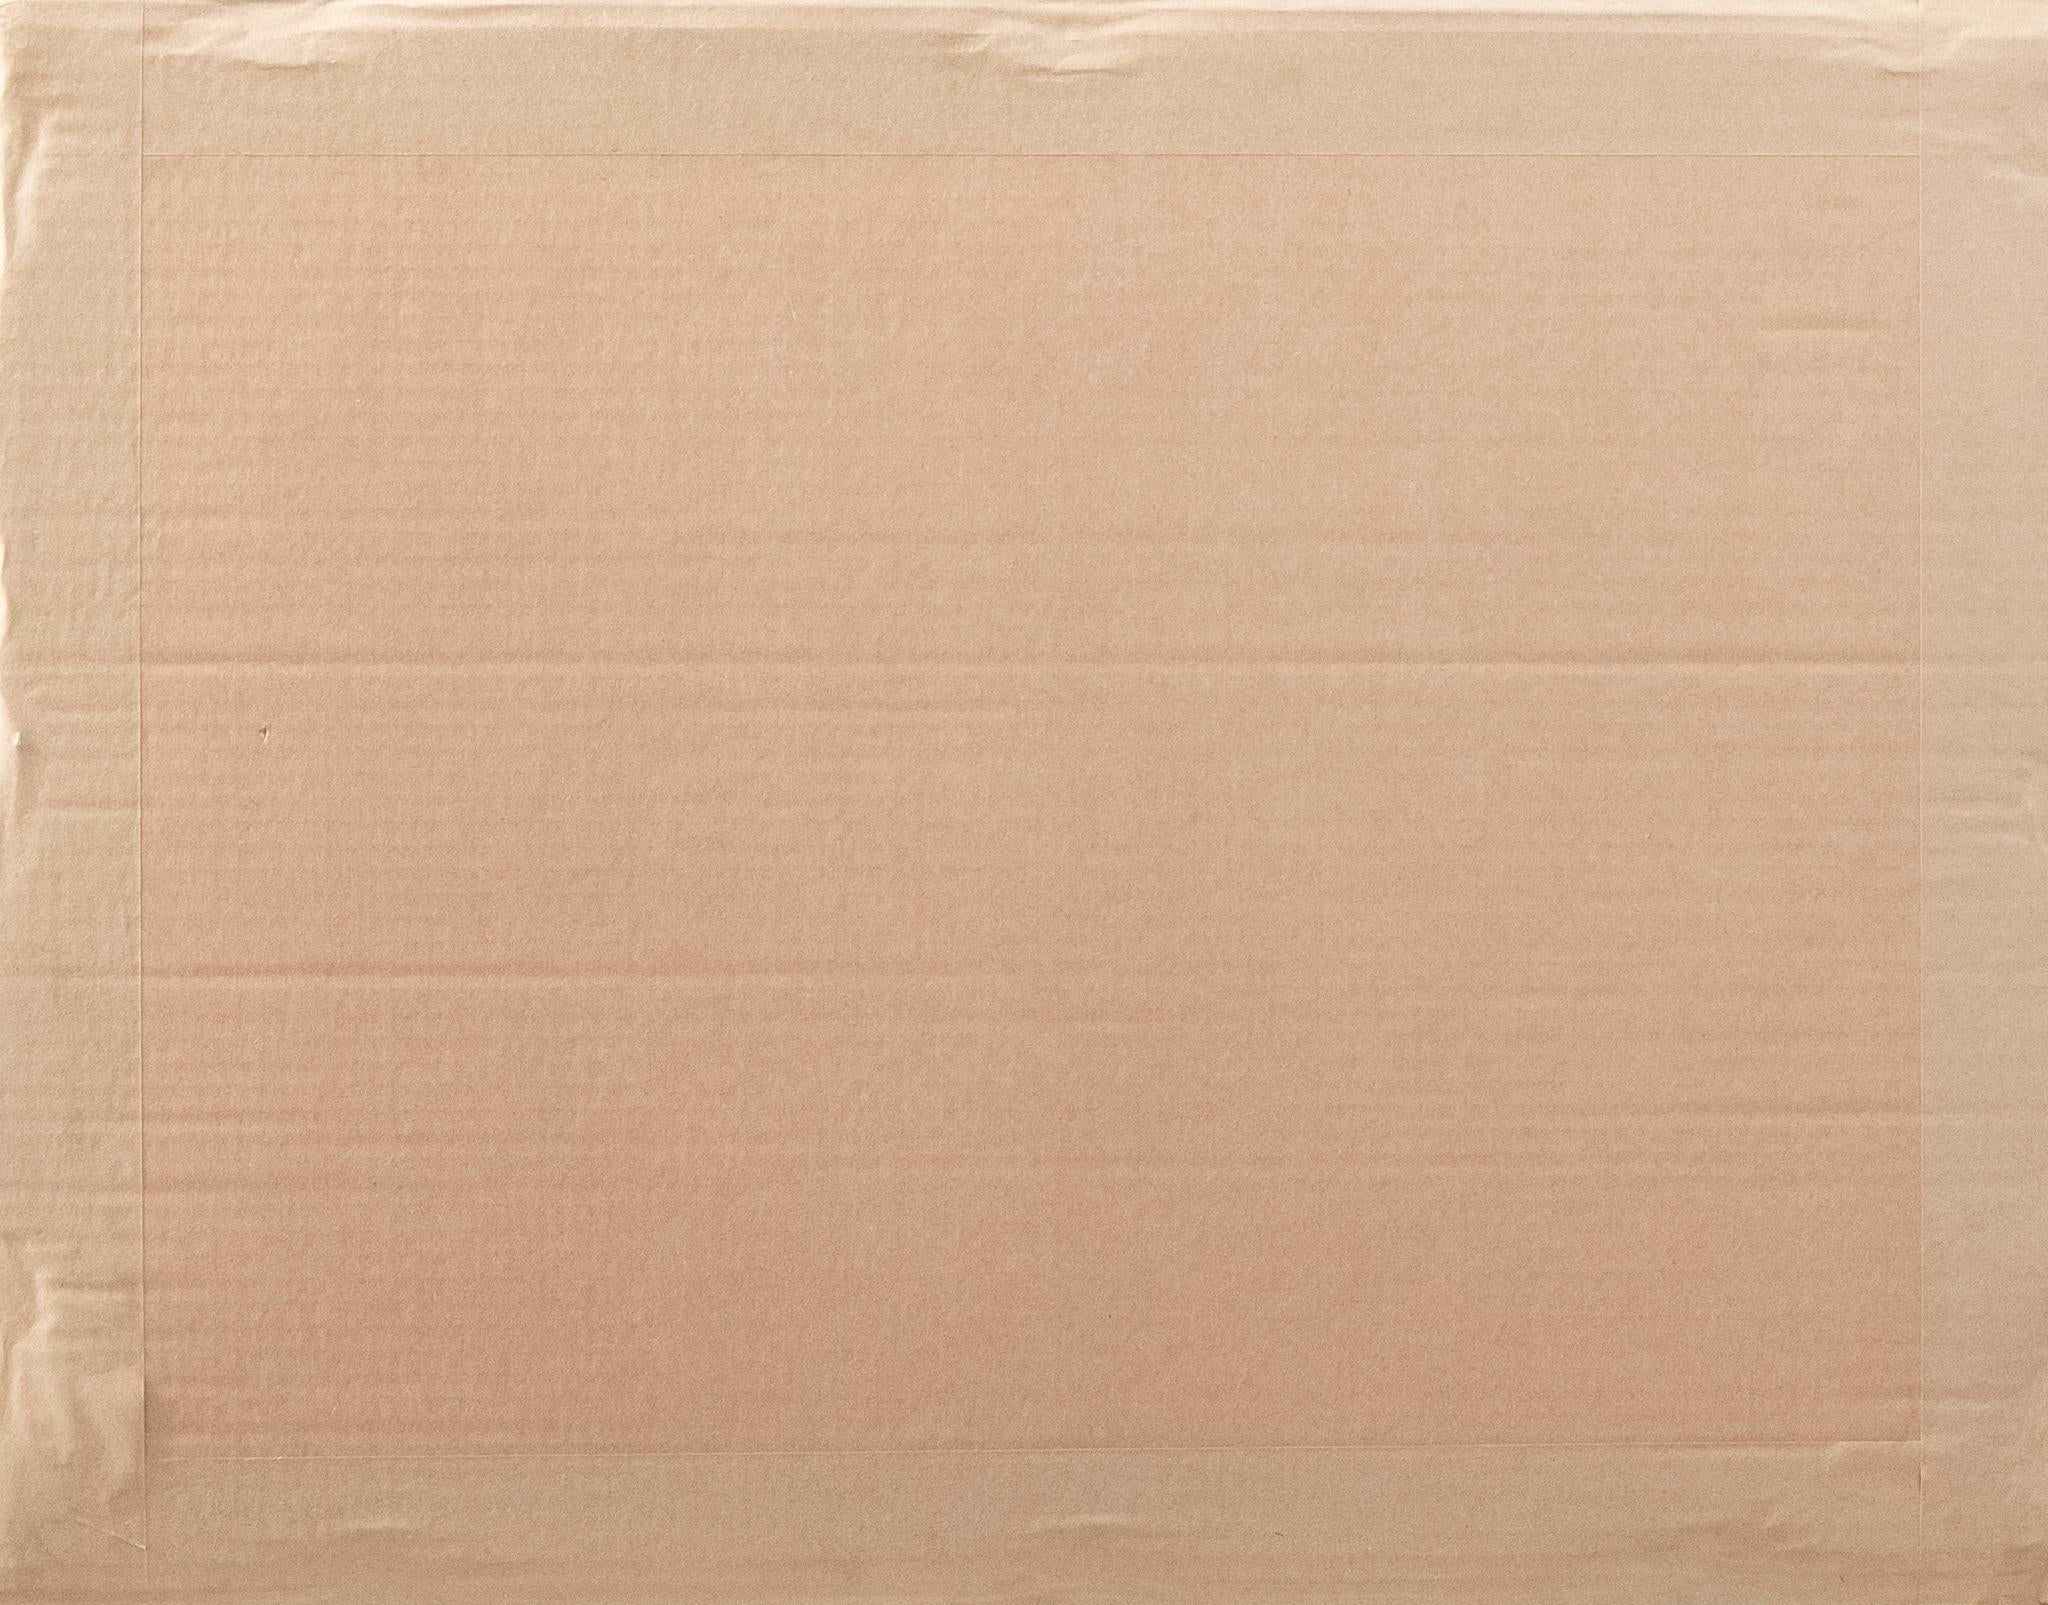 Ein feiner Bilderrahmen aus vergoldetem Holz aus dem 19. Jahrhundert, prächtig verziert mit großen Stuckleisten im Stil der Akanthus-Ranken. Dieser wunderbare antike Rahmen wird mit einem passenden cremefarbenen Passepartout und einem schönen